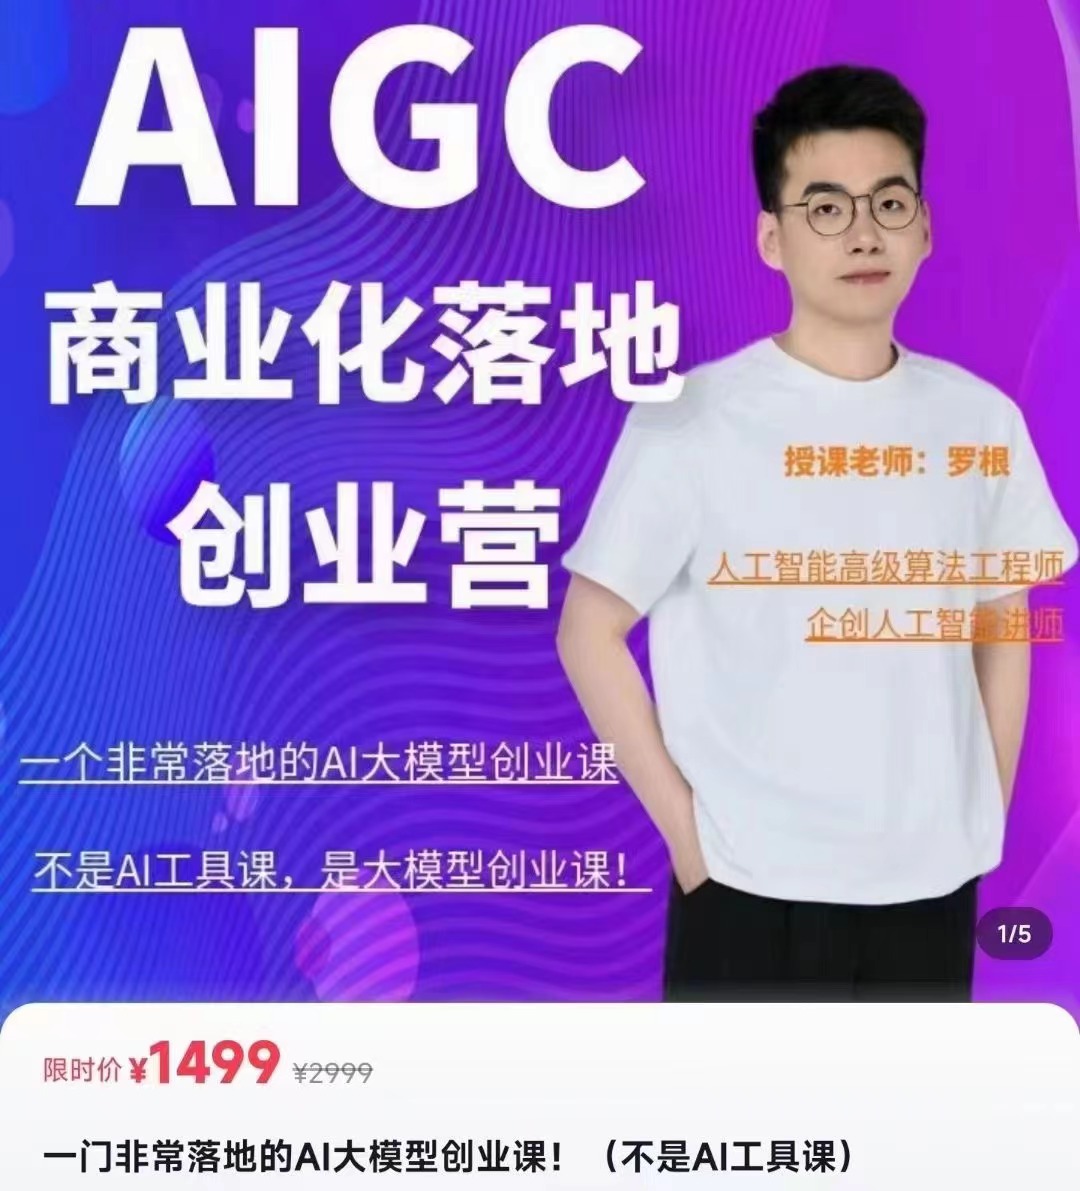 罗根AIGC商业化落地创业营 百度网盘